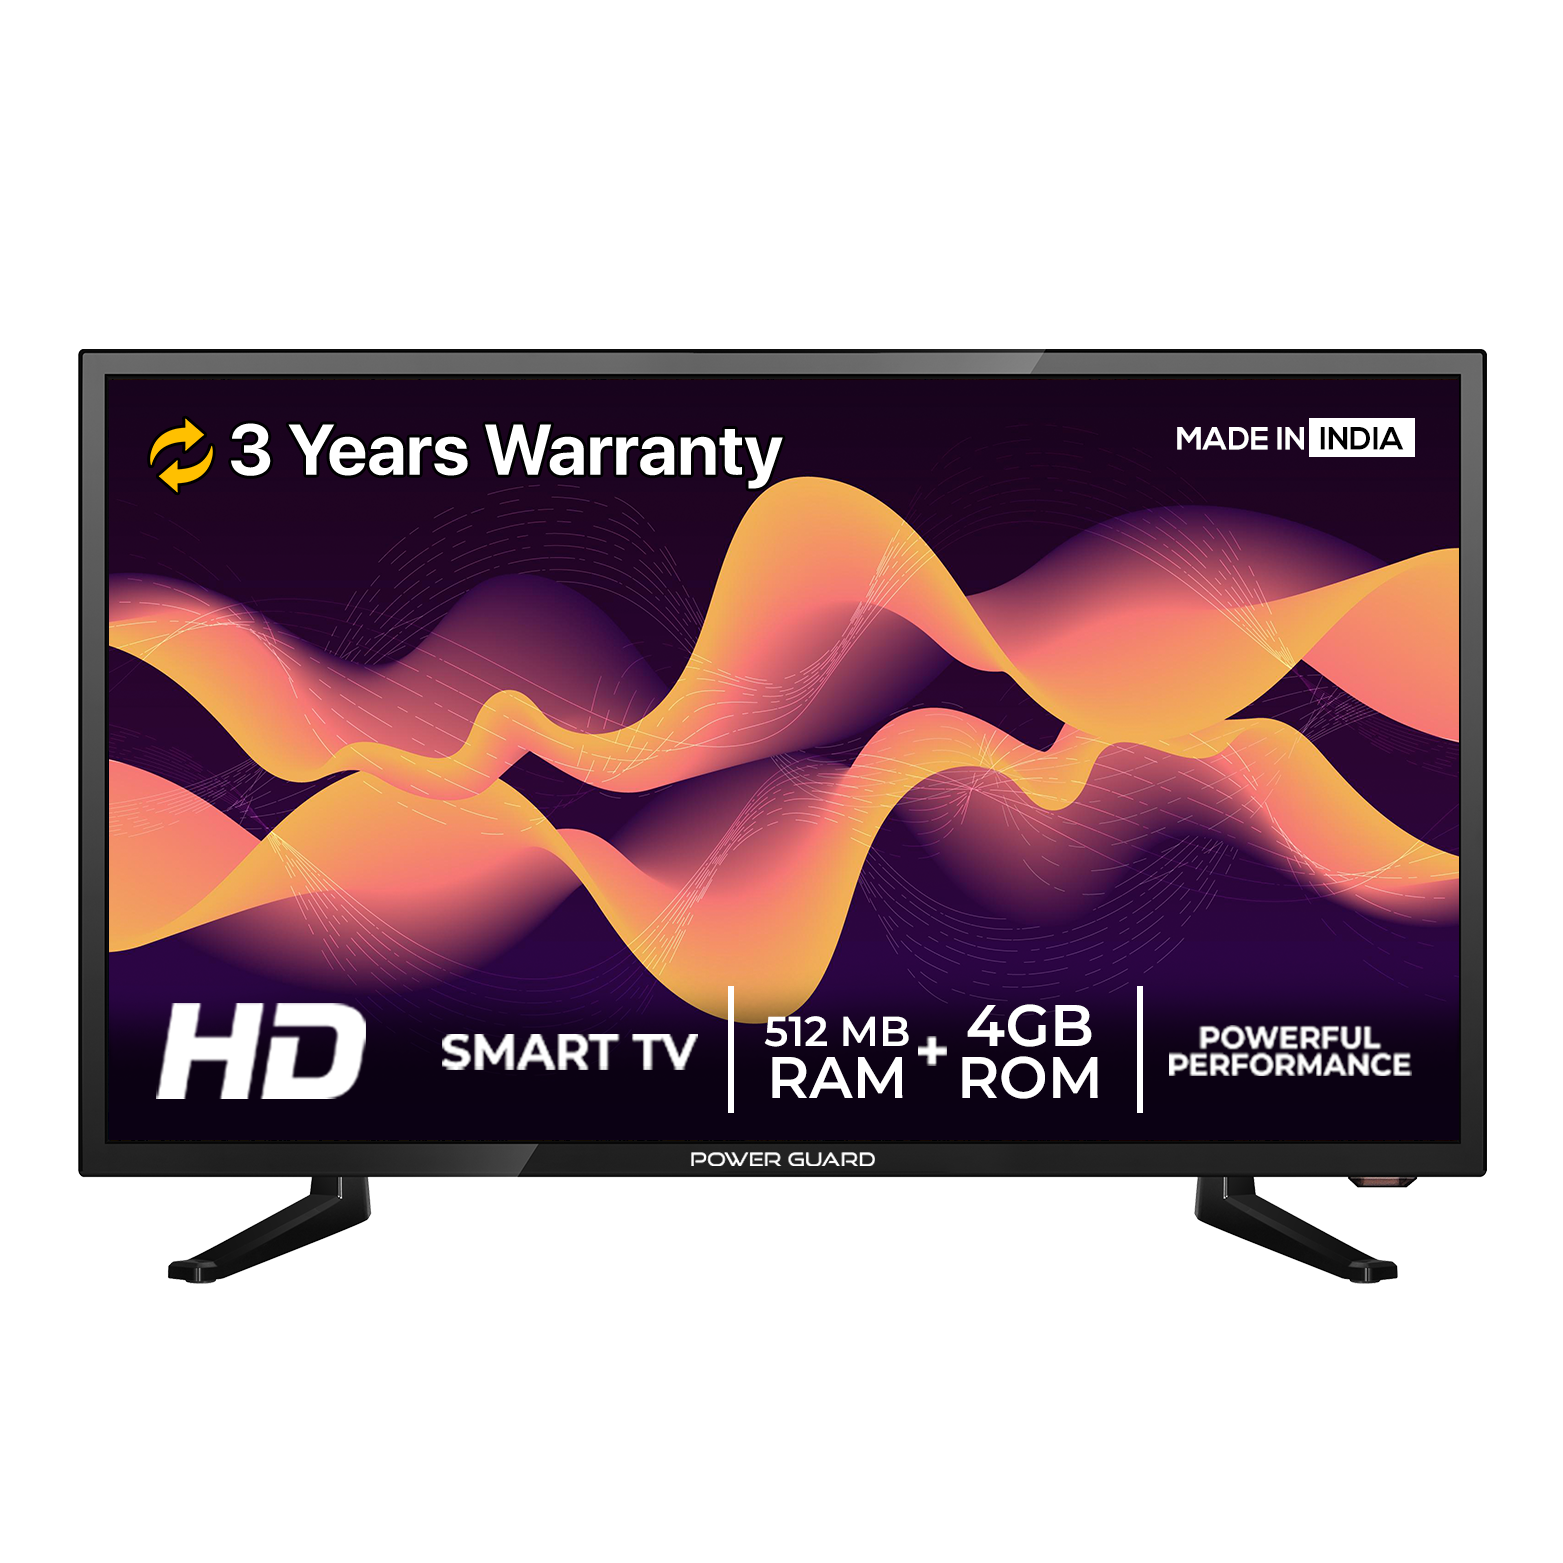 24 inch LED HD Smart TV